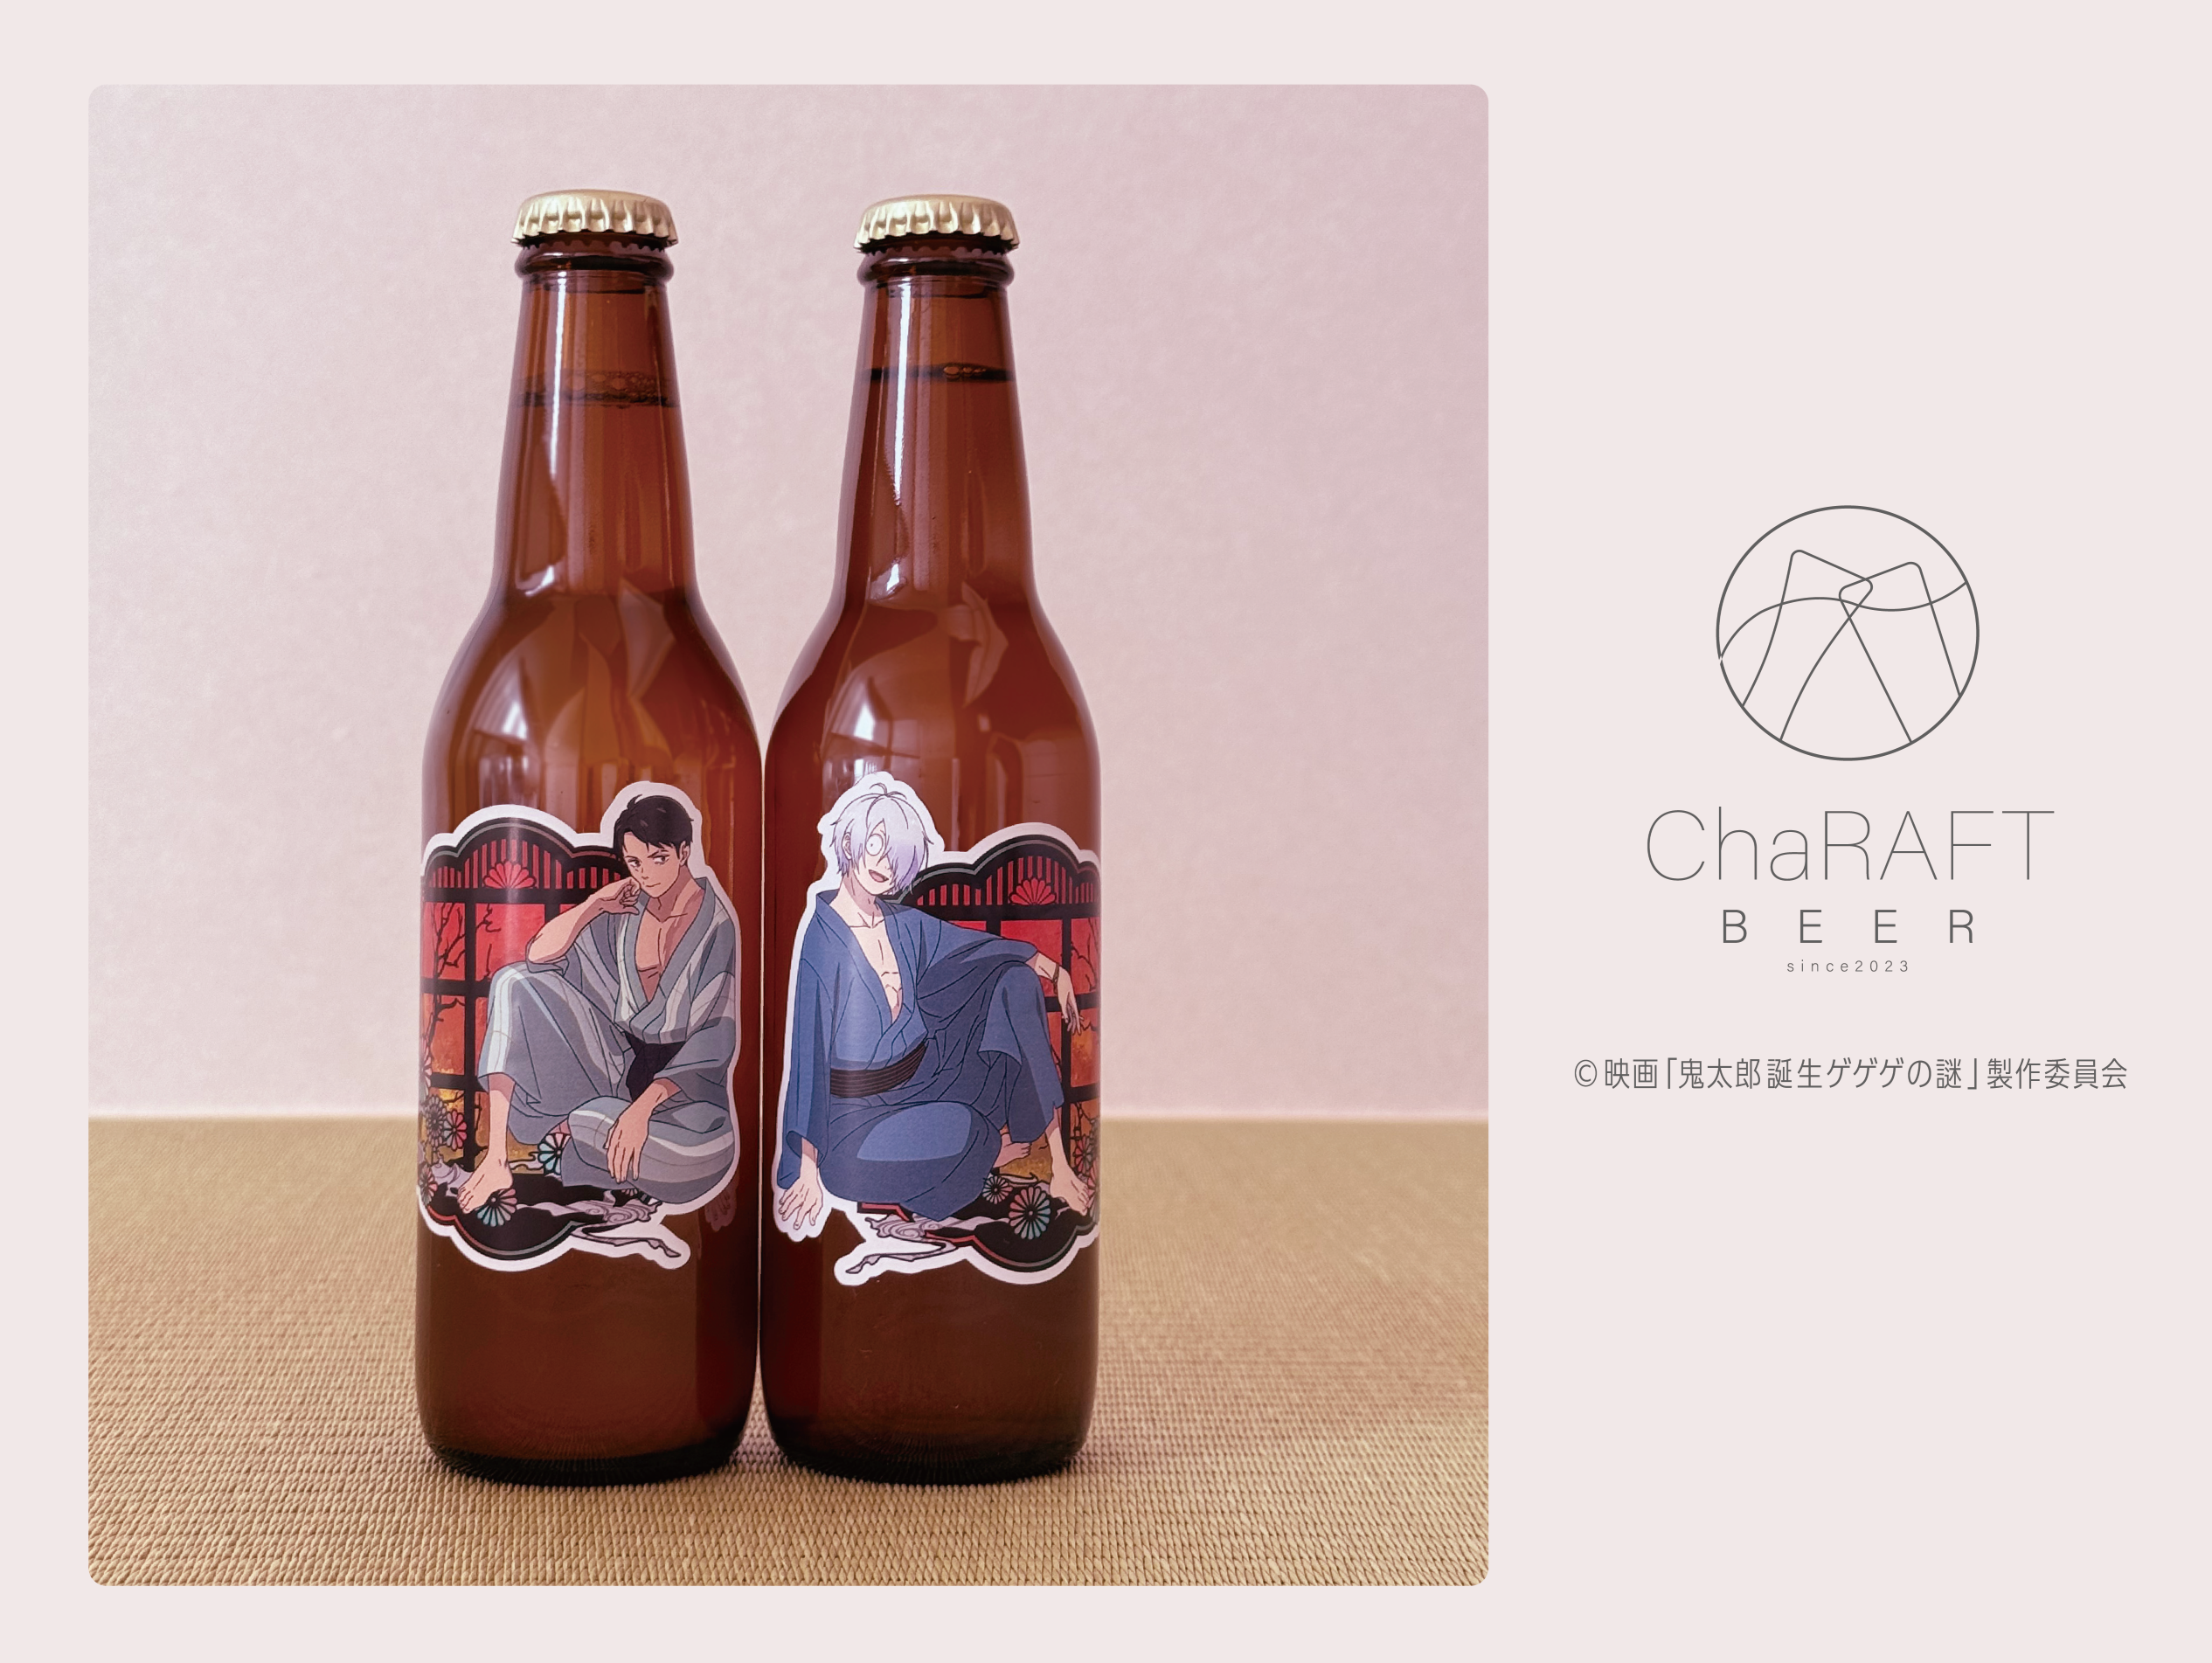 「ゲゲゲの謎×キャラフトビール」ゲゲ郎＆水木をイメージしたクラフトビールセットが登場！